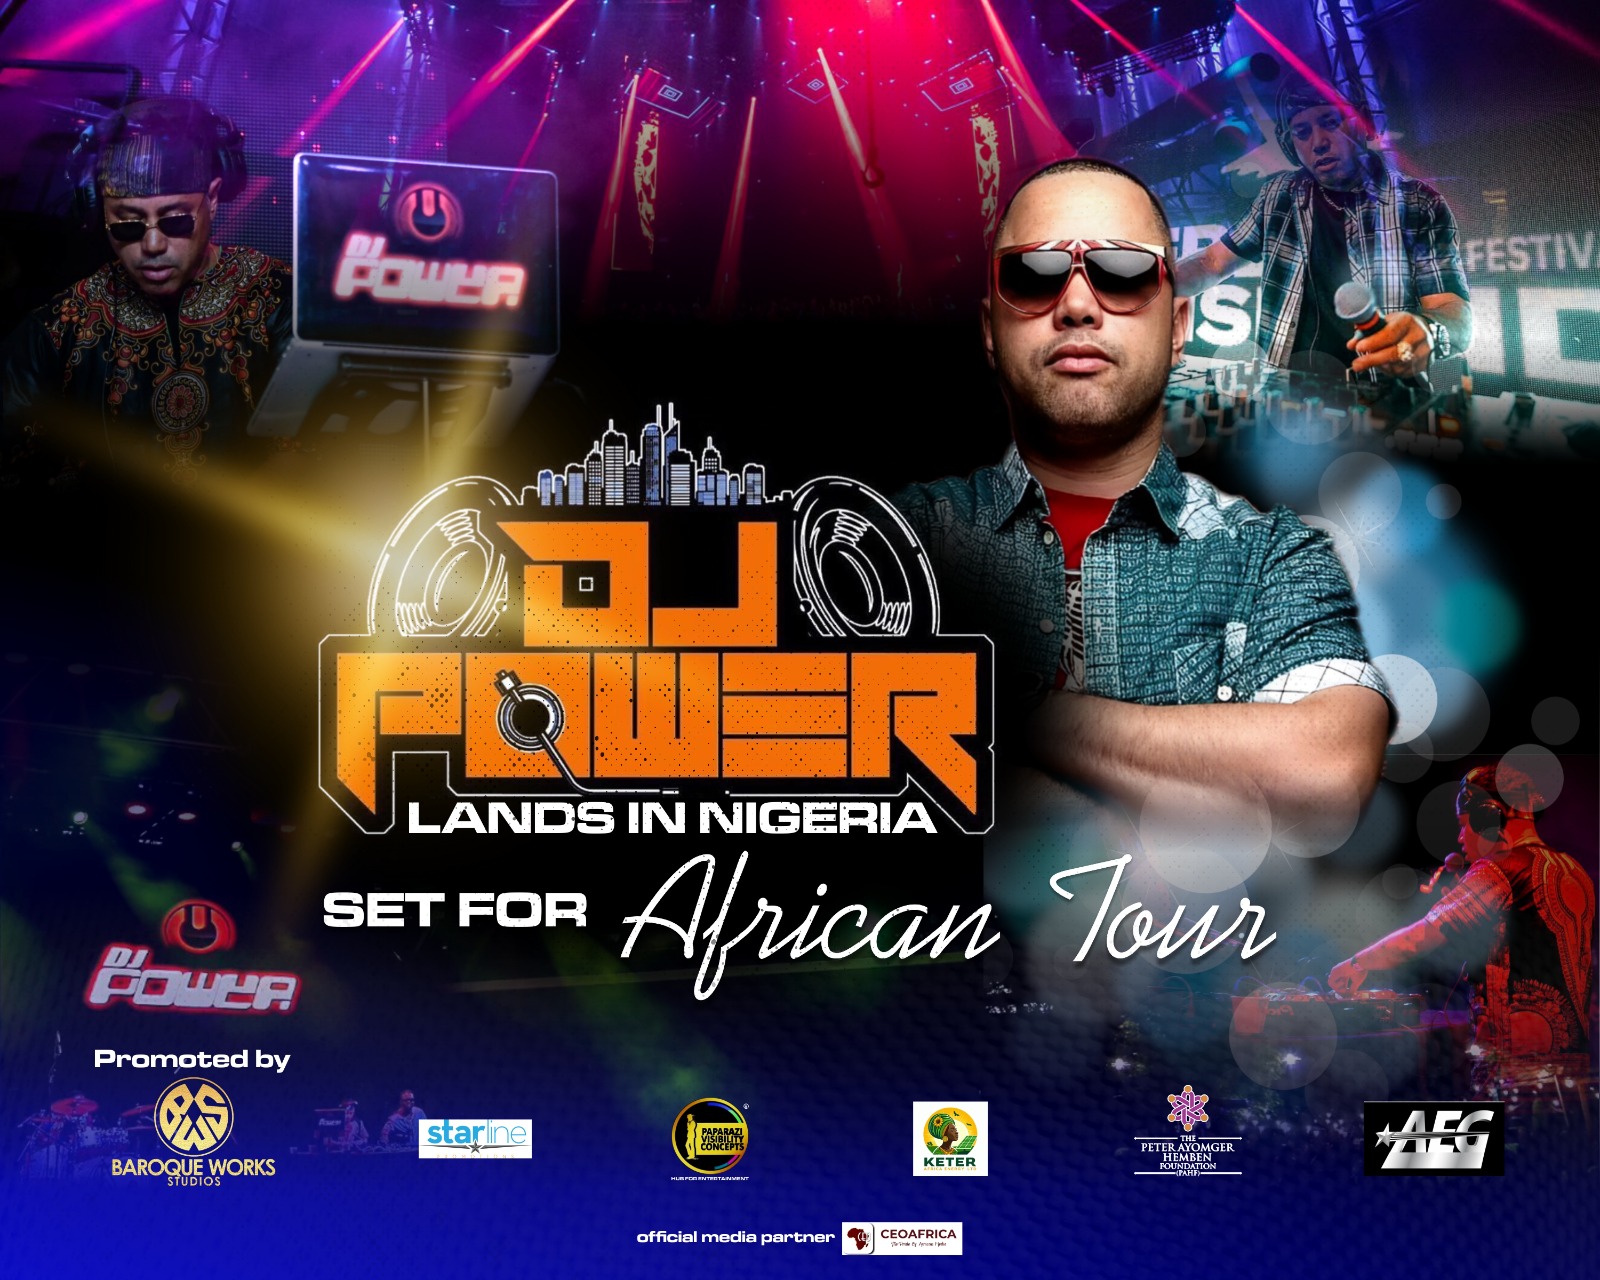 DJ Power Live in Nigeria